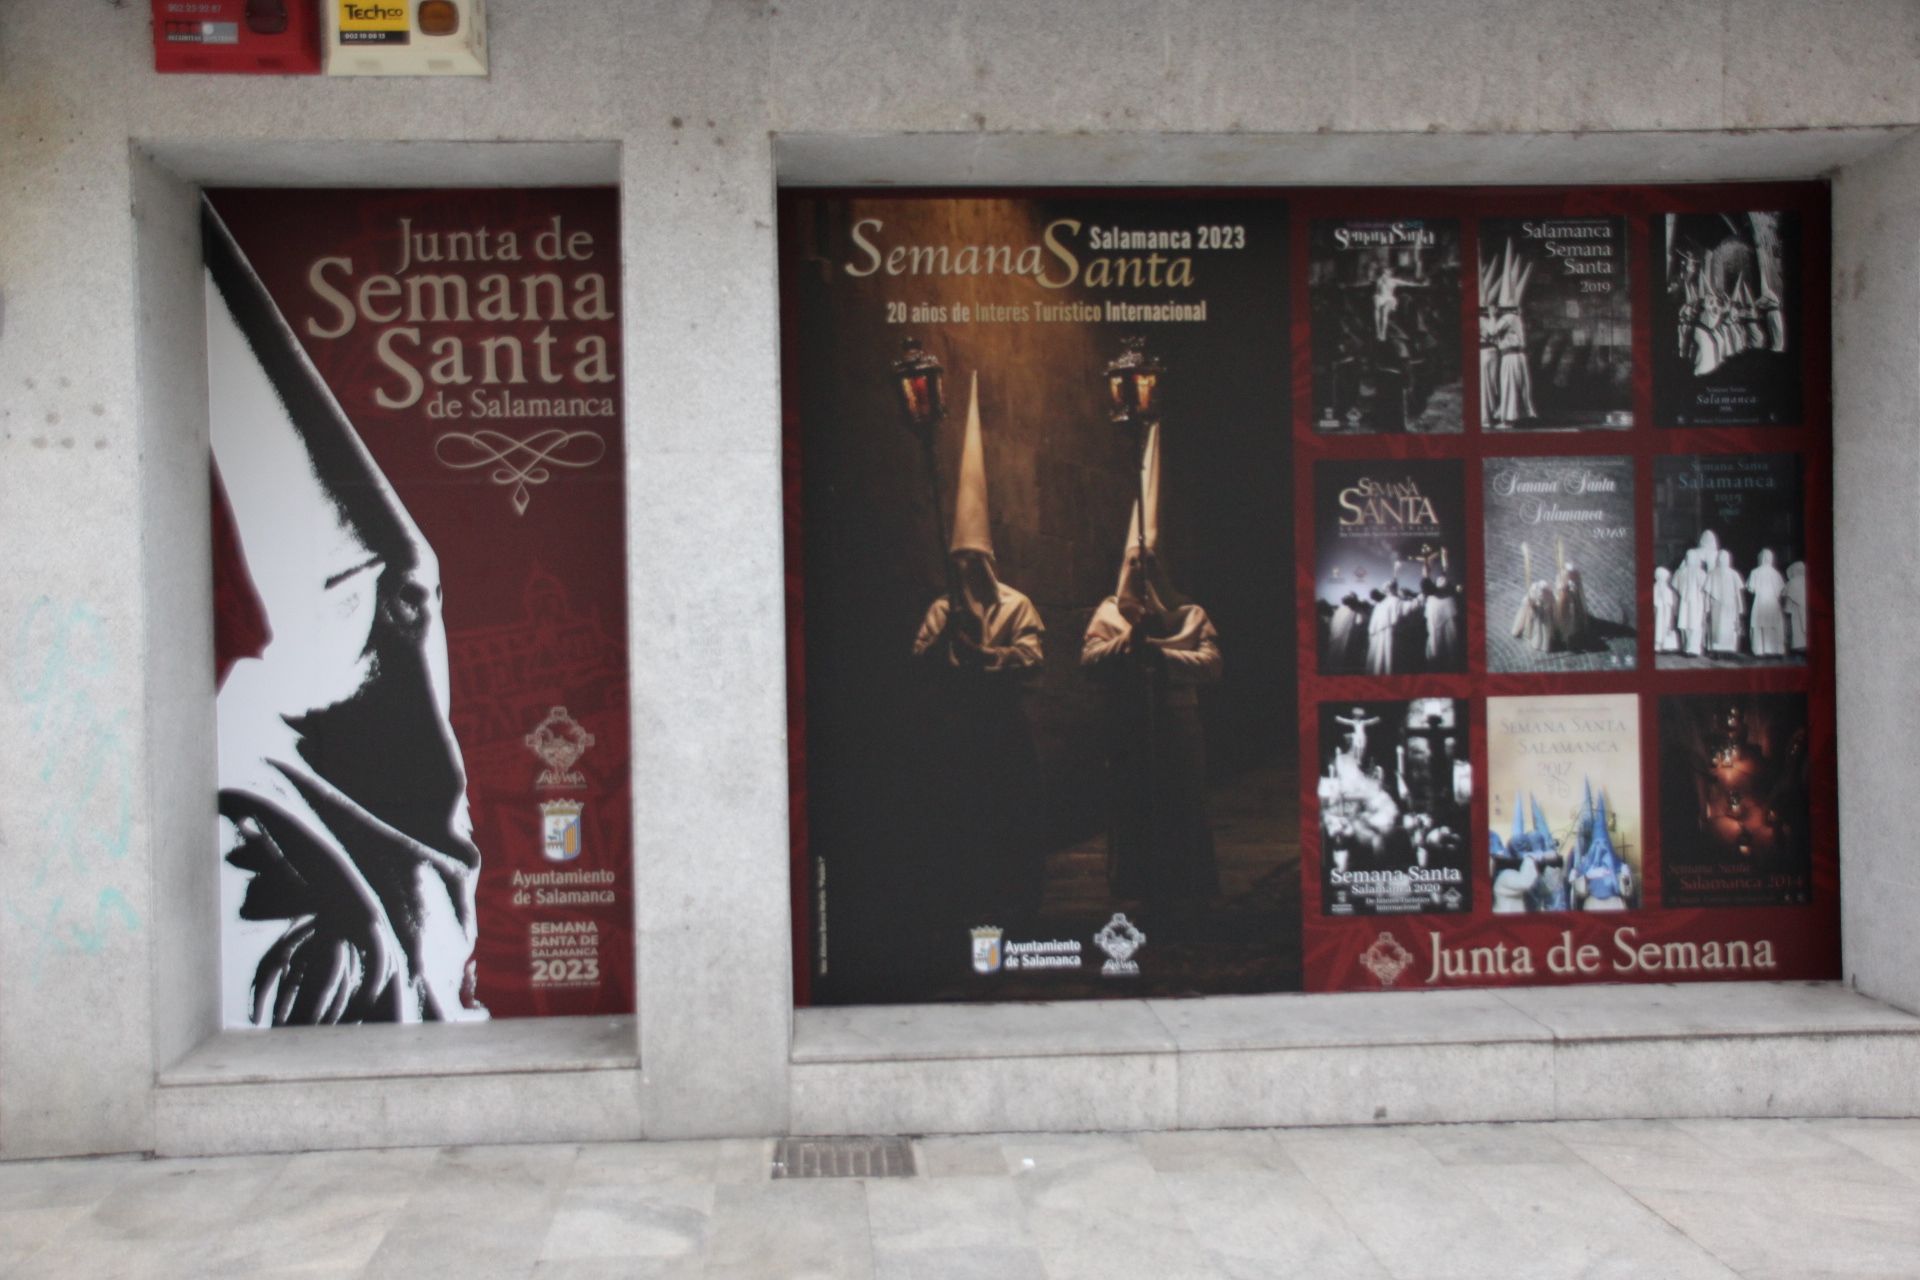 vinilos promocionales de la Semana Santa de Salamanca